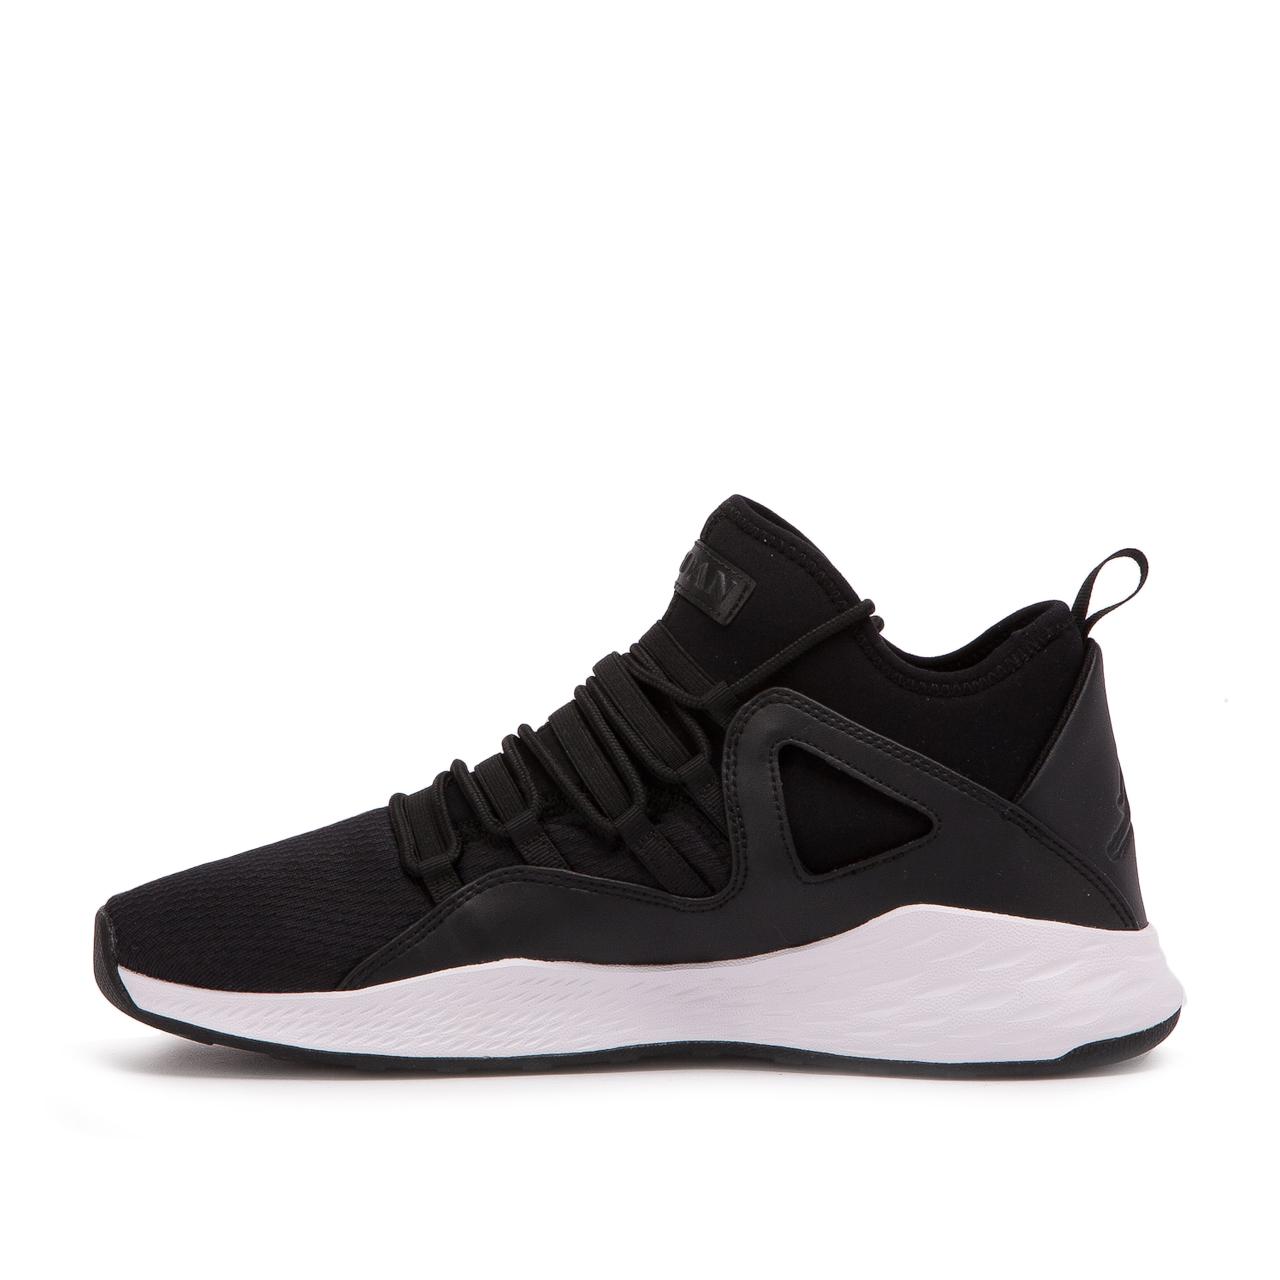 Nike Synthetic Nike Air Jordan Formula 23 in Black for Men - Lyst